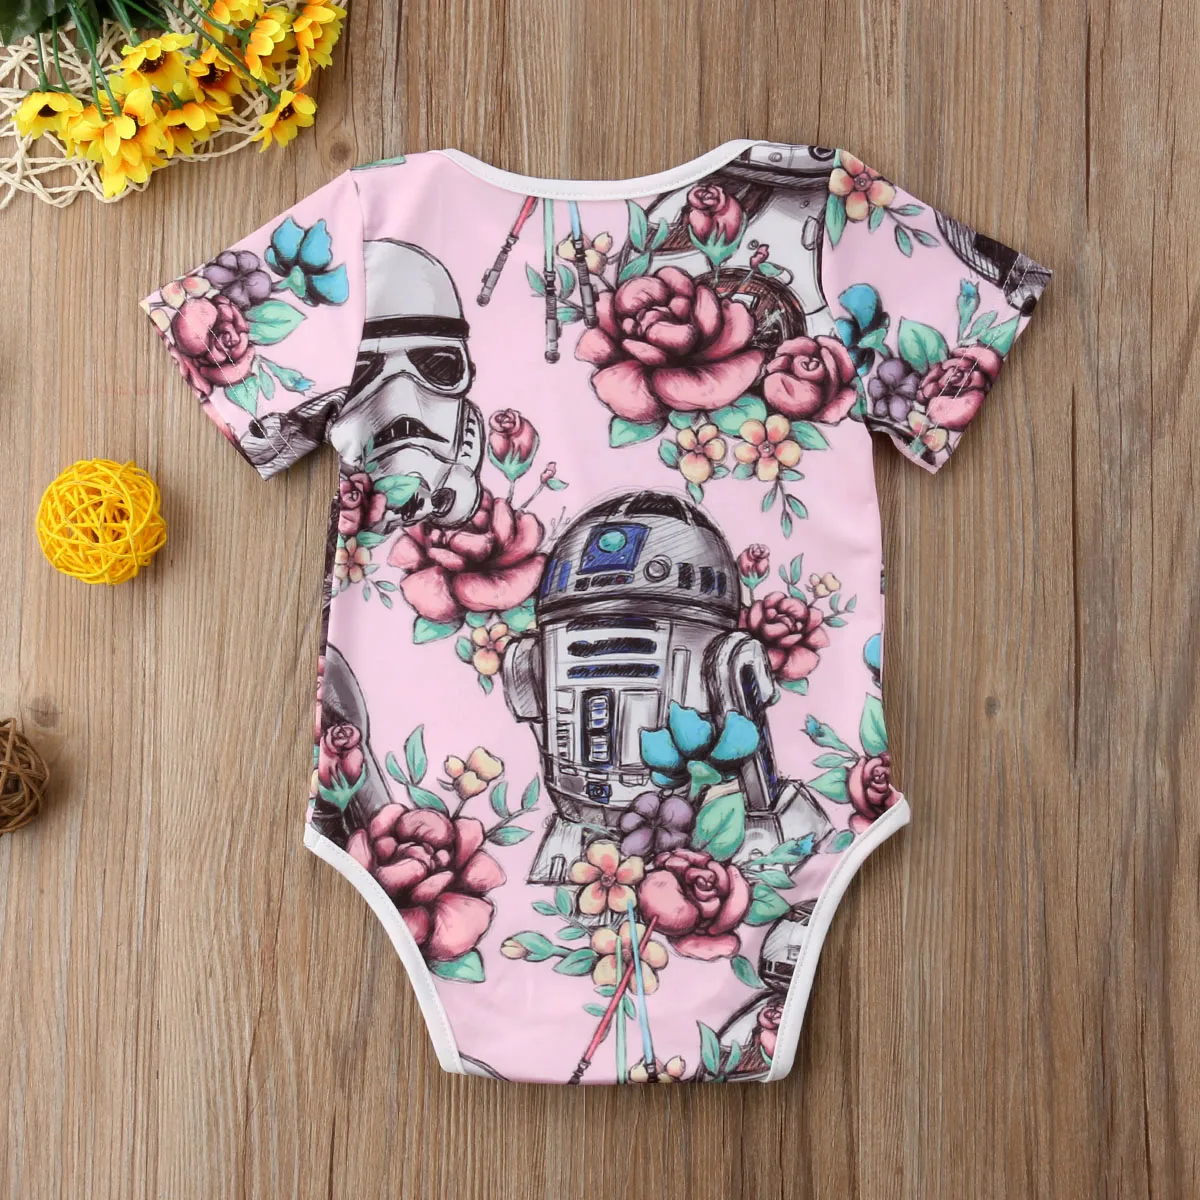 Pudcoco новорожденных для маленьких девочек Боди Одежда Звездные войны принт короткий рукав пляжный комбинезон 3-18 м